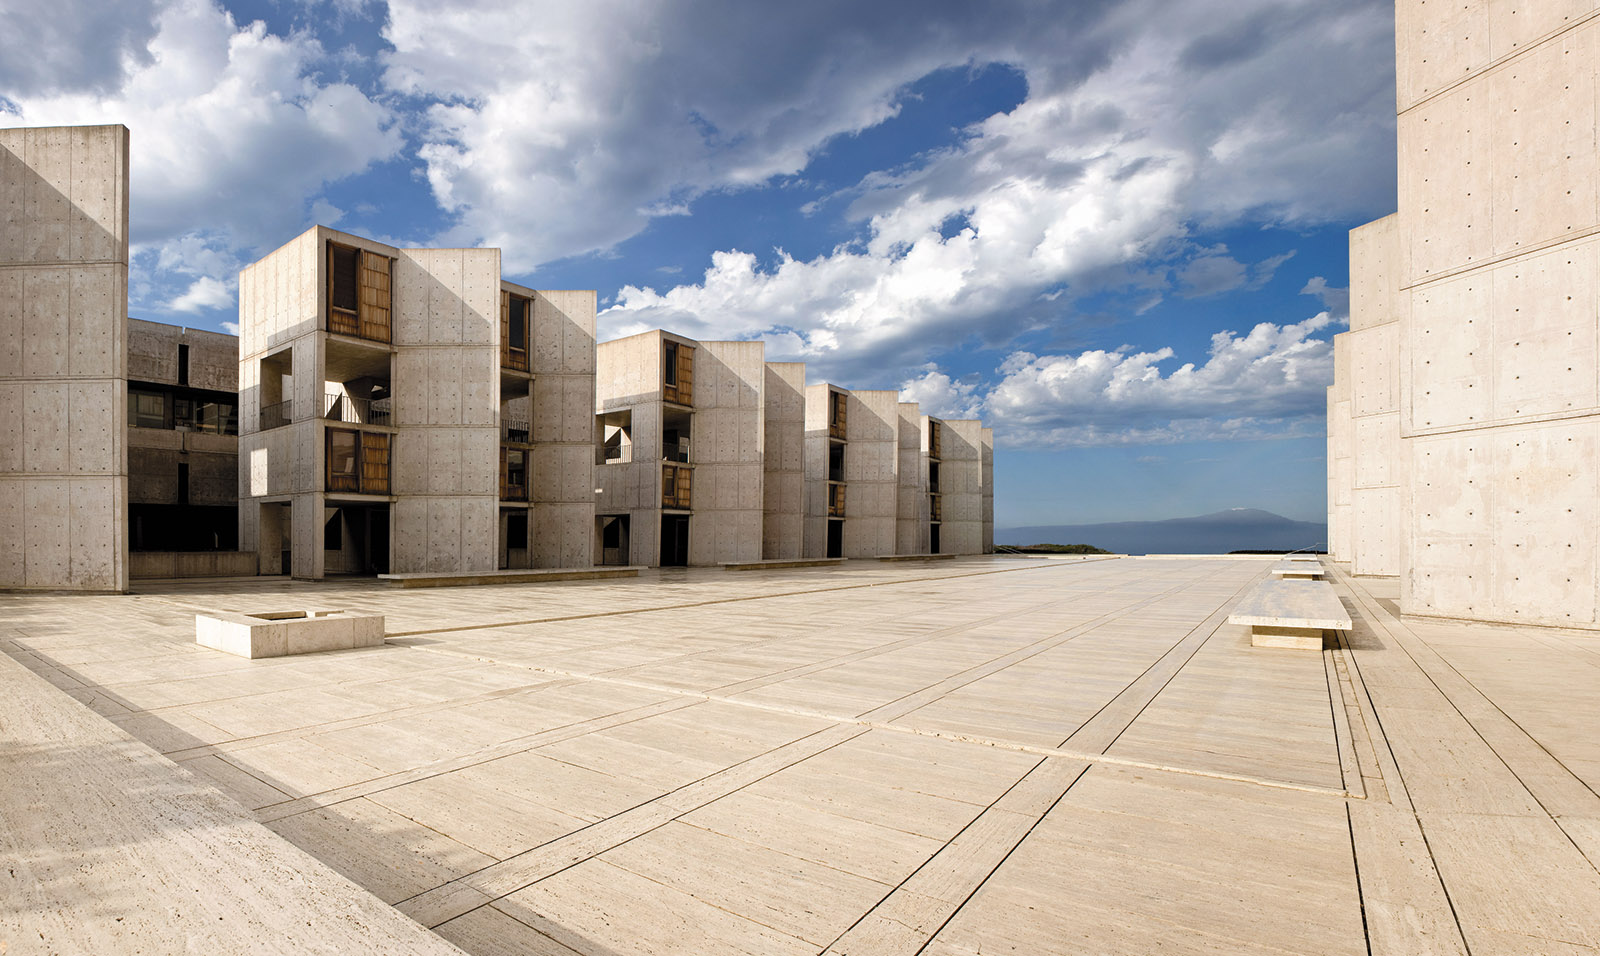 Restoration work completes on Louis Kahn's Salk Institute in